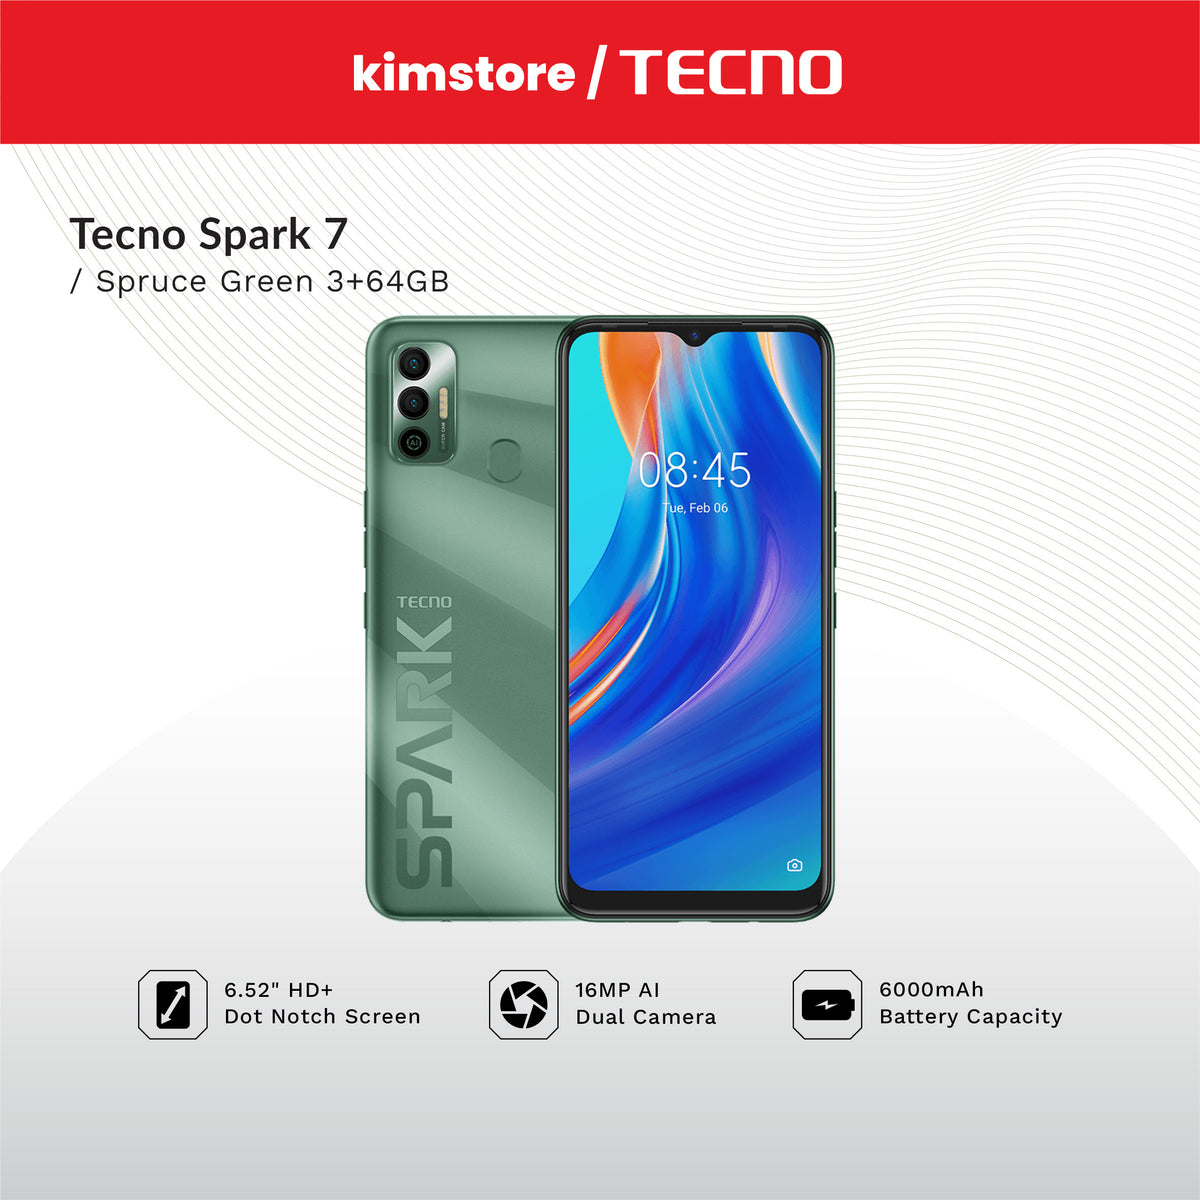 TECNO Spark 7